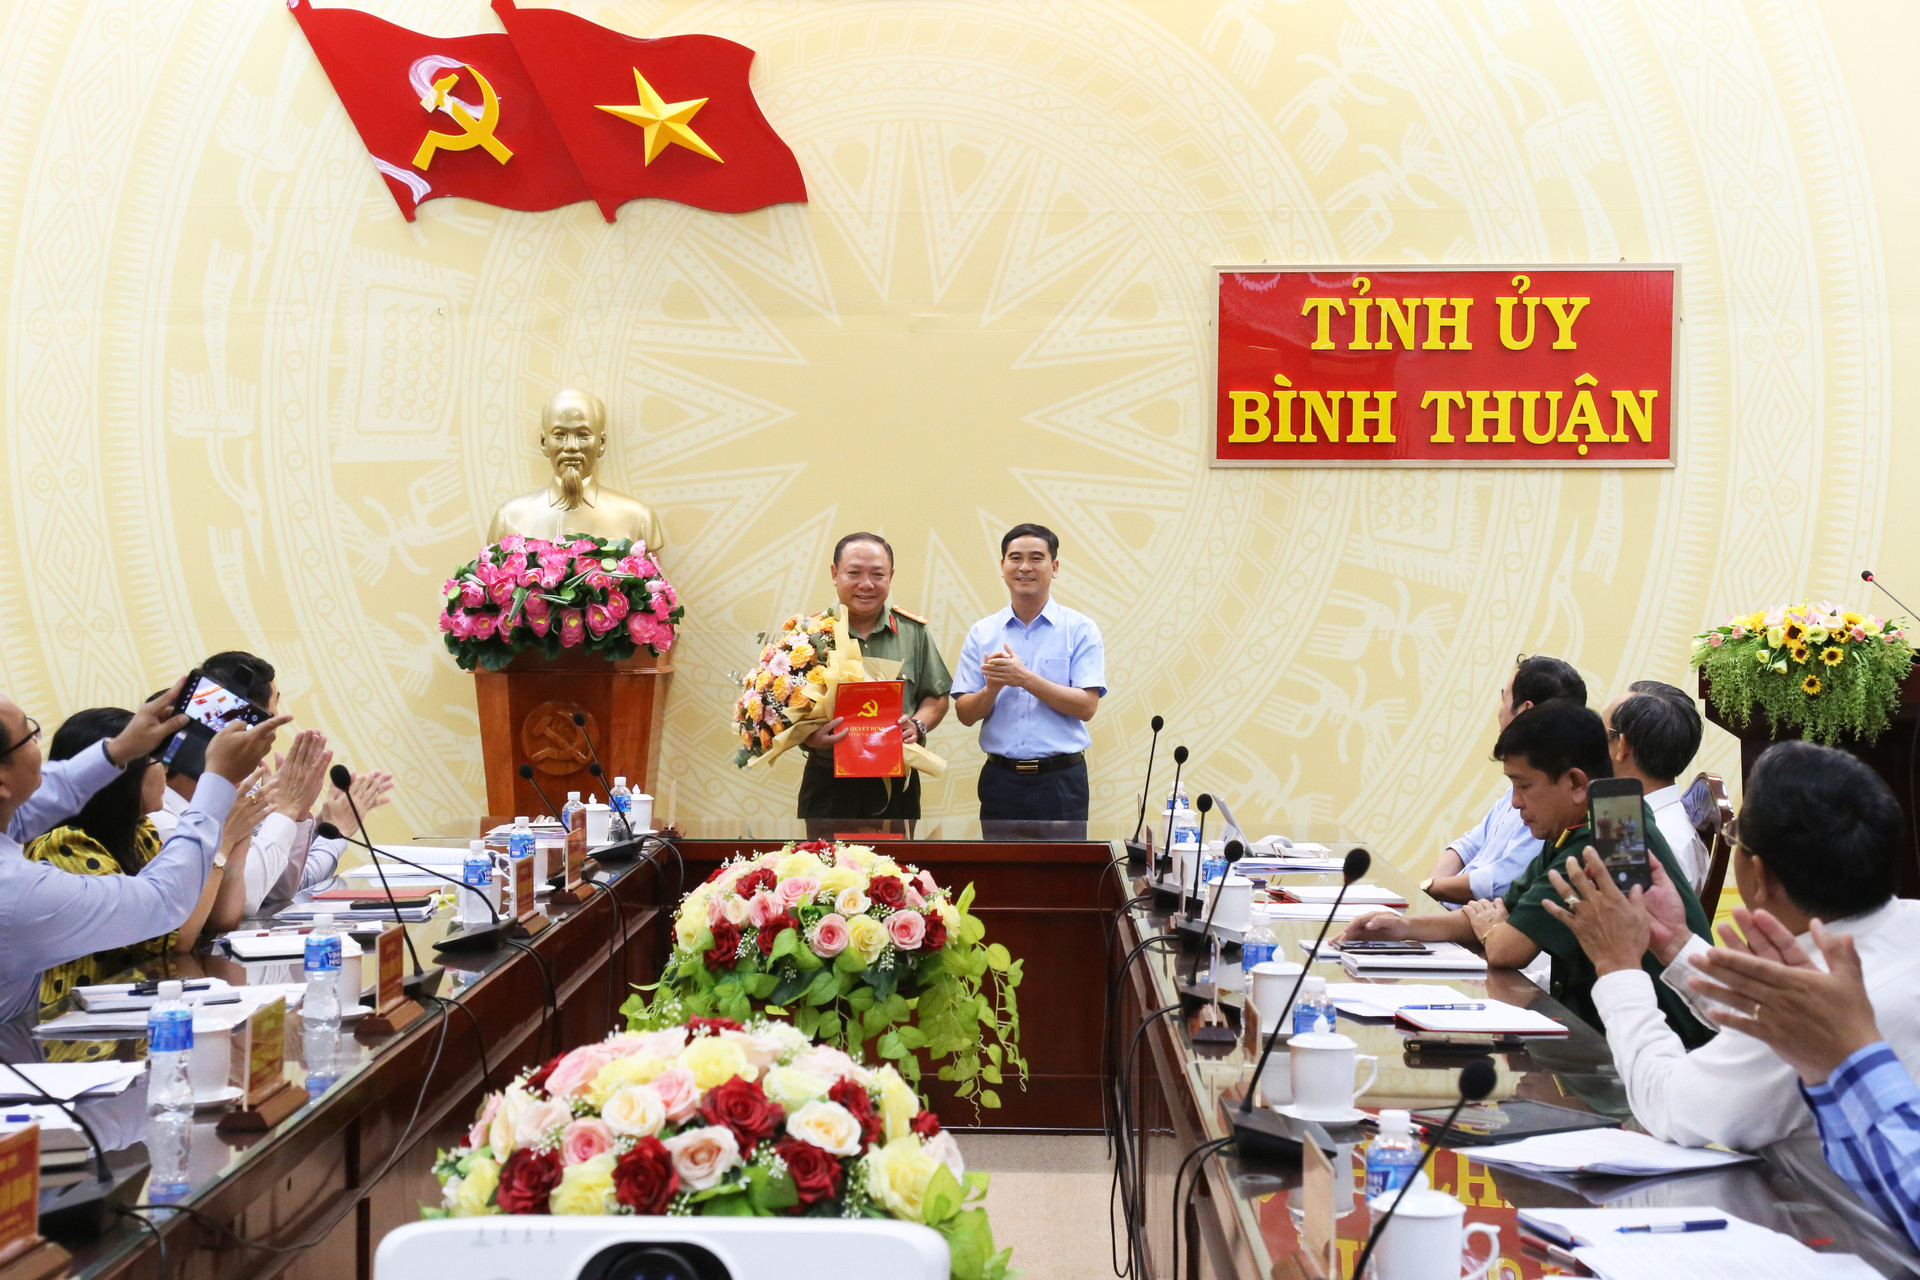 Đại tá Lê Quang Nhân, Giám đốc Công an tỉnh được chỉ định tham gia Ban Thường vụ Tỉnh ủy Bình Thuận  - Ảnh 2.